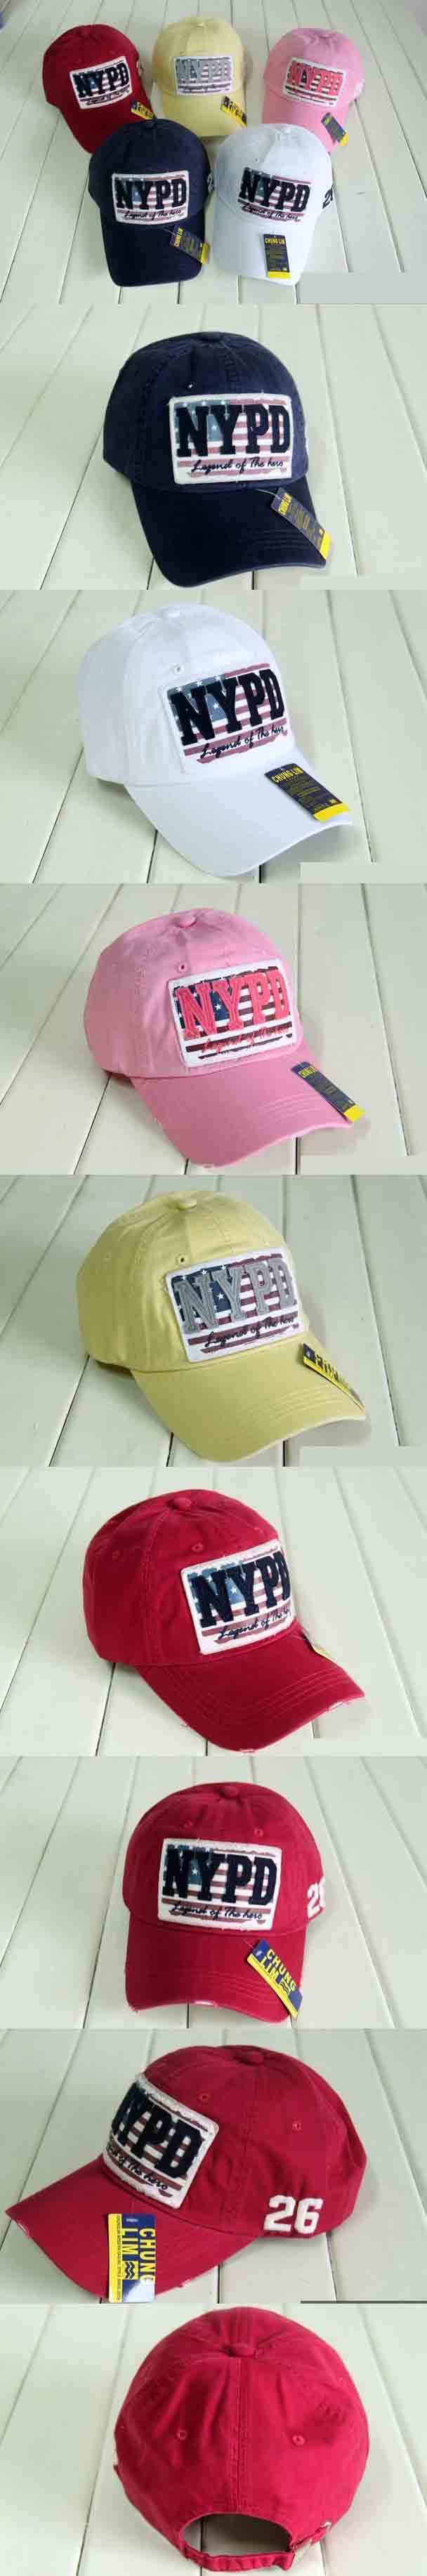 jual topi nypd keren , sangat cocok untuk dipakai sehari hari, temukan koleksi topi pria online terlengkap hanya di pfp store